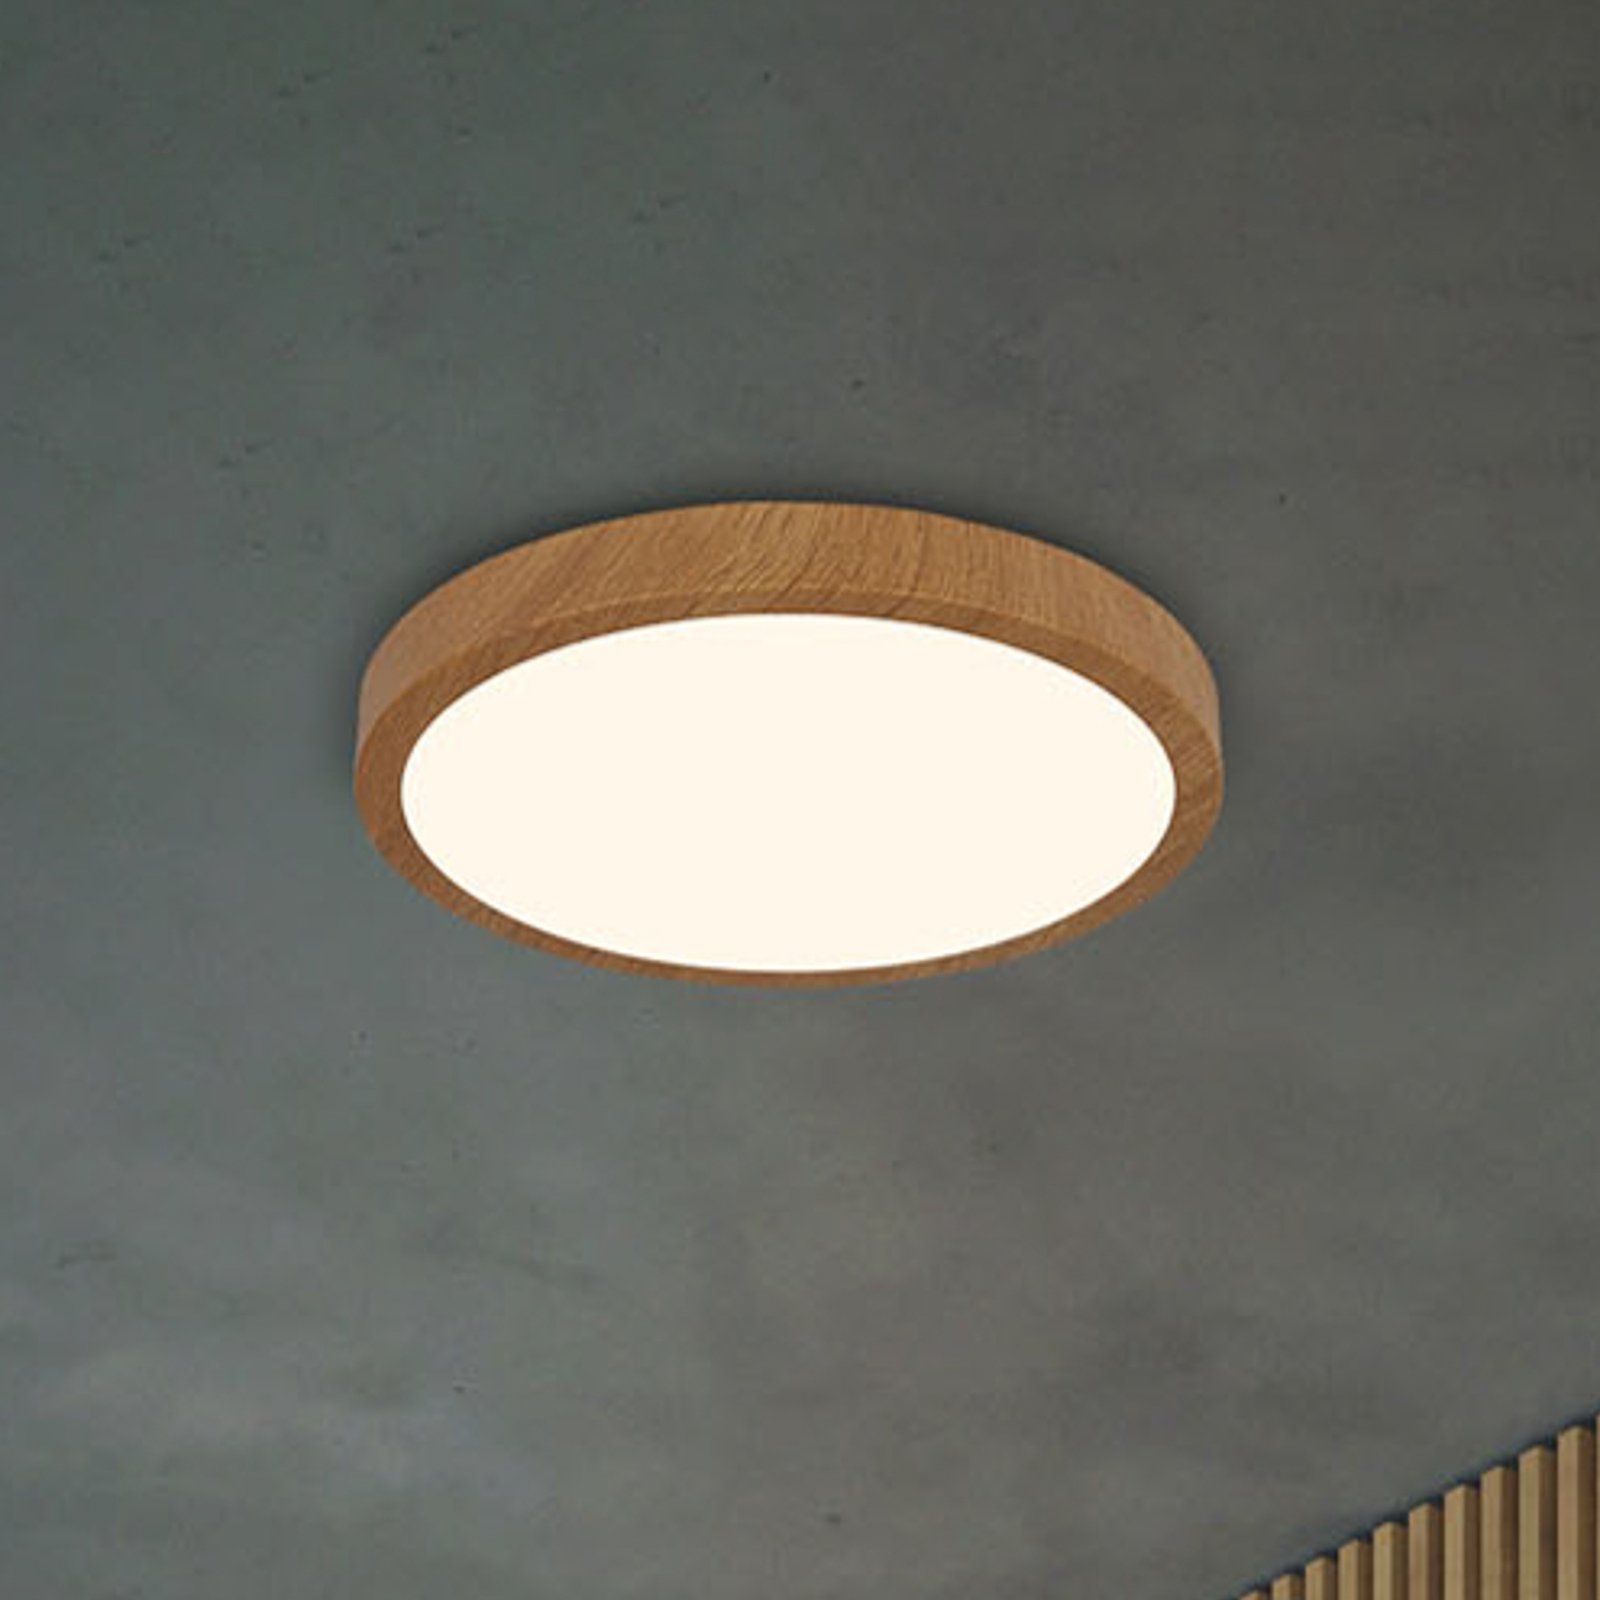 Lampa sufitowa LED Runa Wood o wyglądzie drewna 3000 K Ø38cm